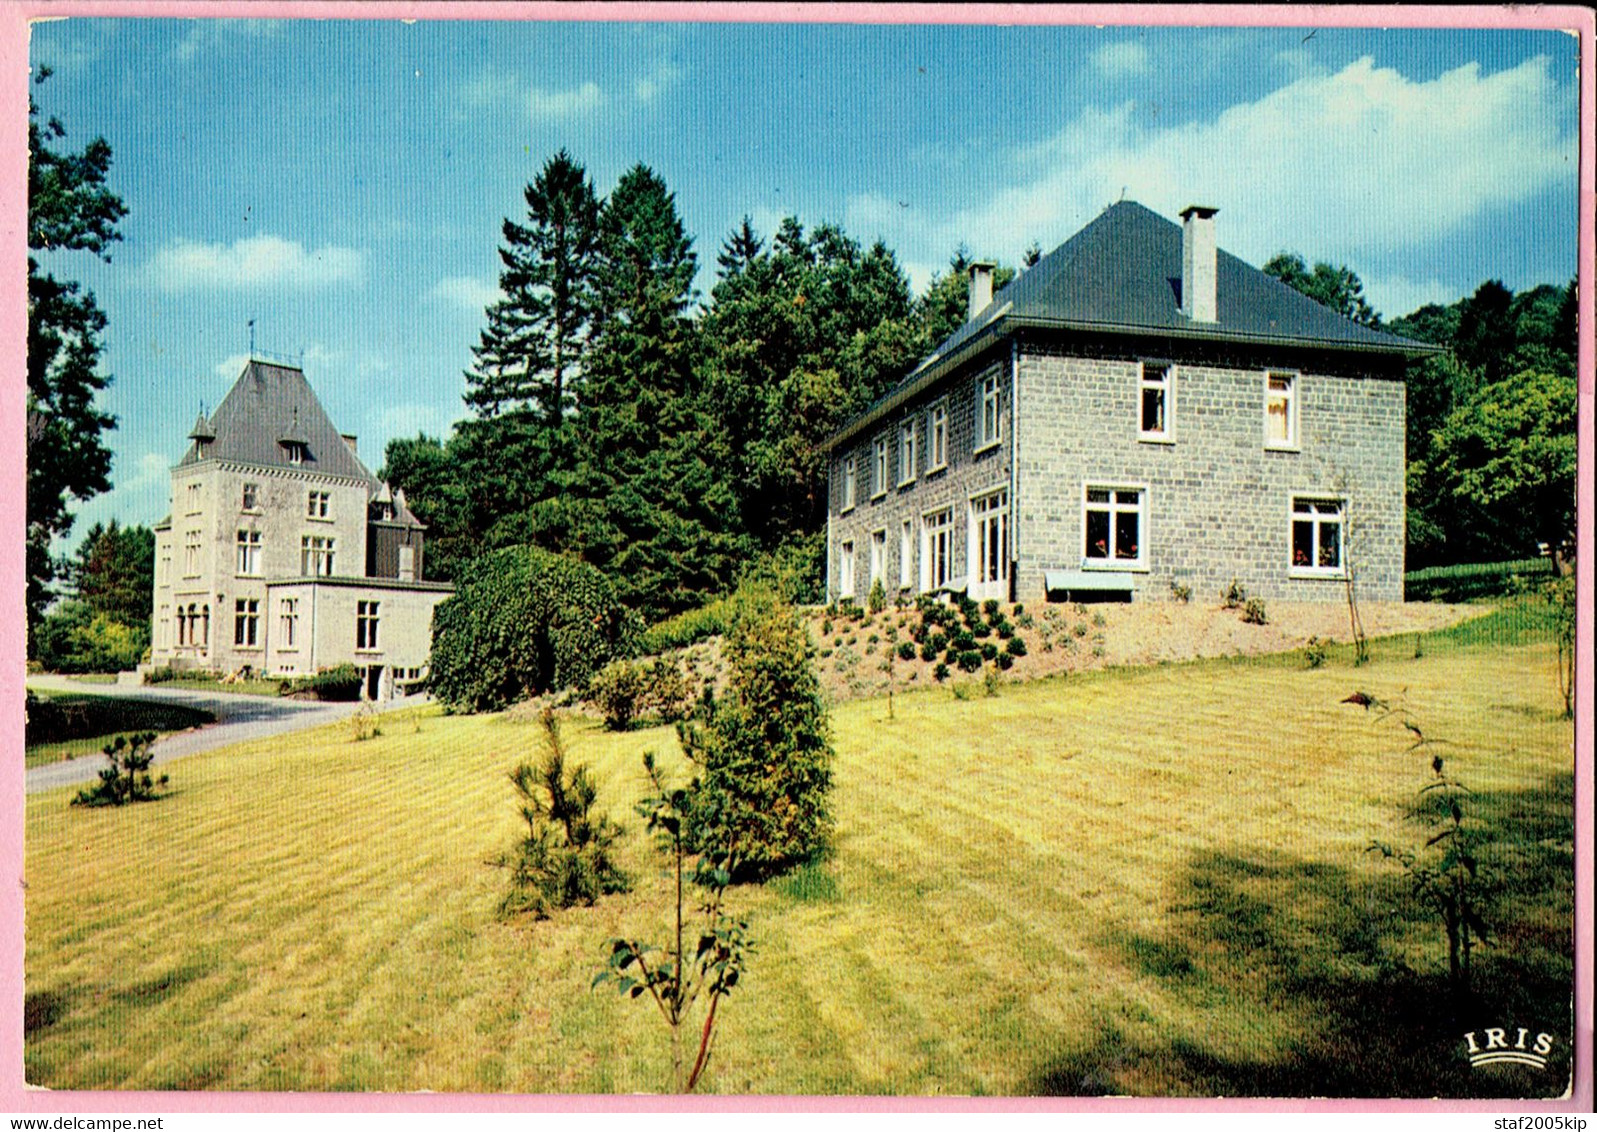 Accueil Str-Dorothee - Godinne-s/Meuse - La Clairière Et L'accueil - 1972 - Yvoir